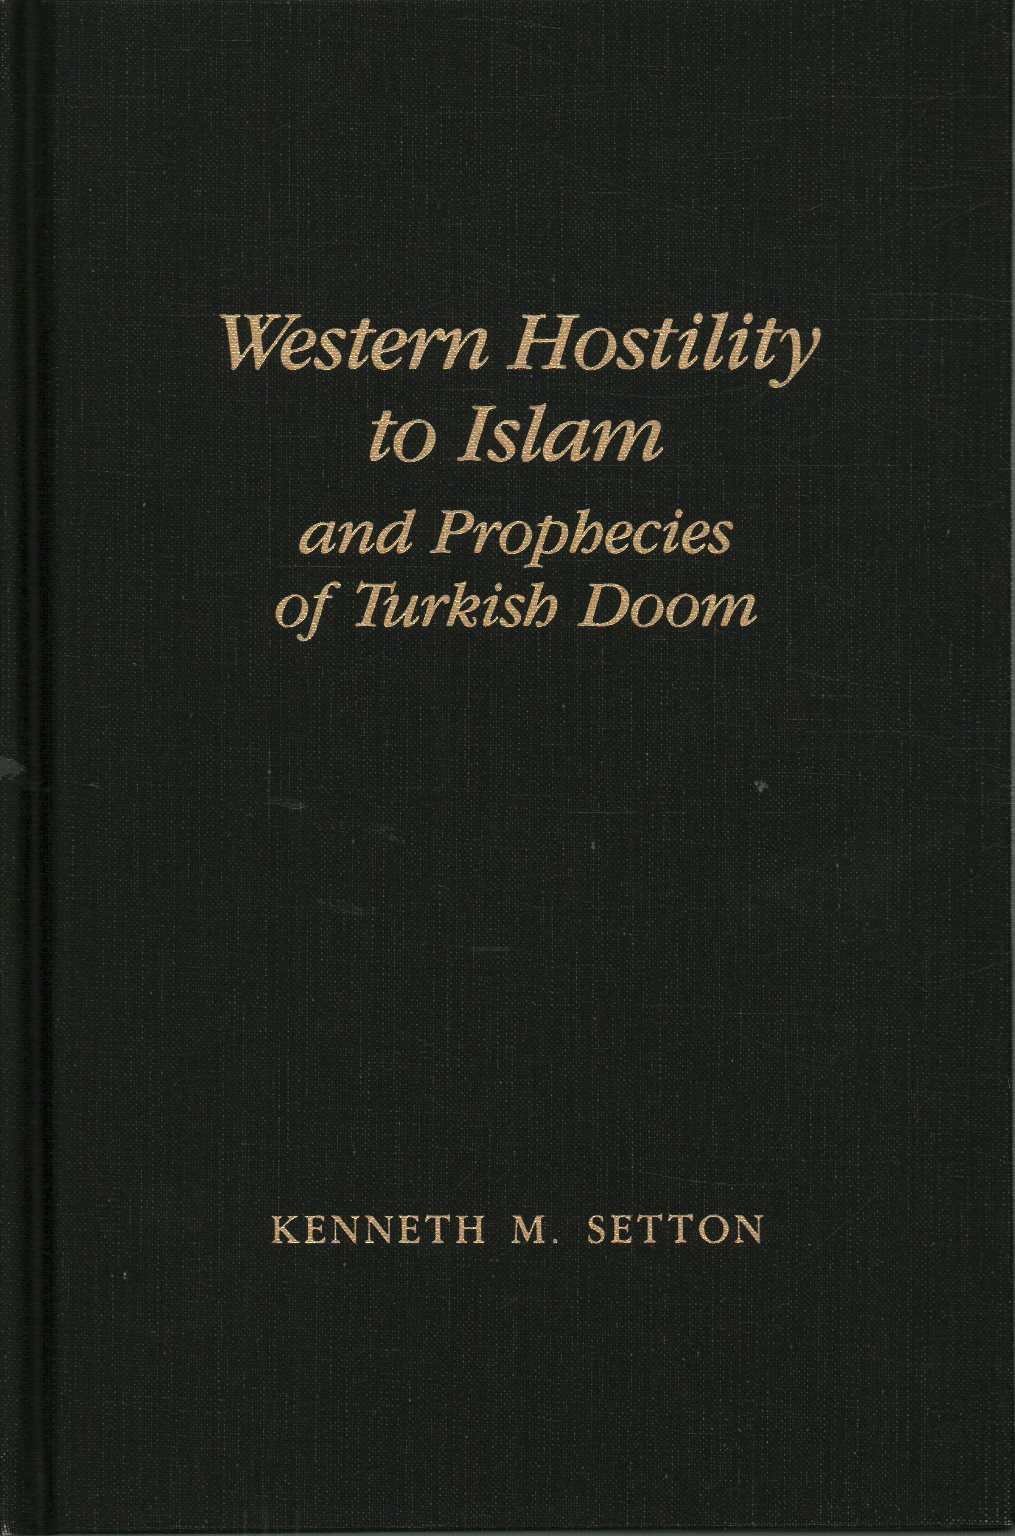 El oeste de la Hostilidad hacia el Islam y las profecías de los Turcos, Kenneth M. Setton